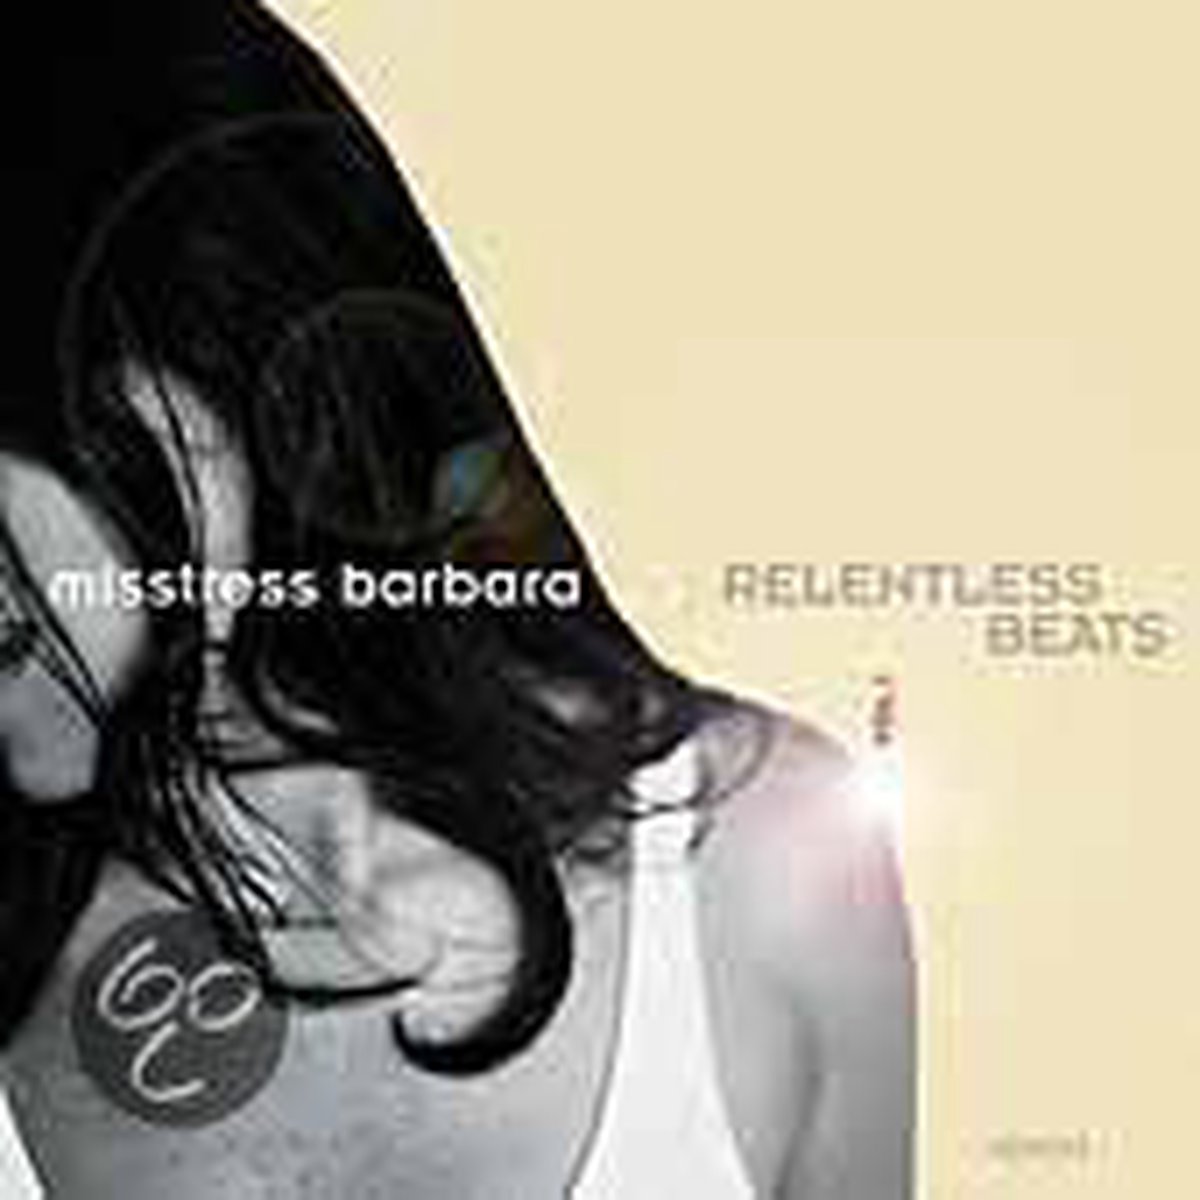 Relentless Beats - Misstress Barbara